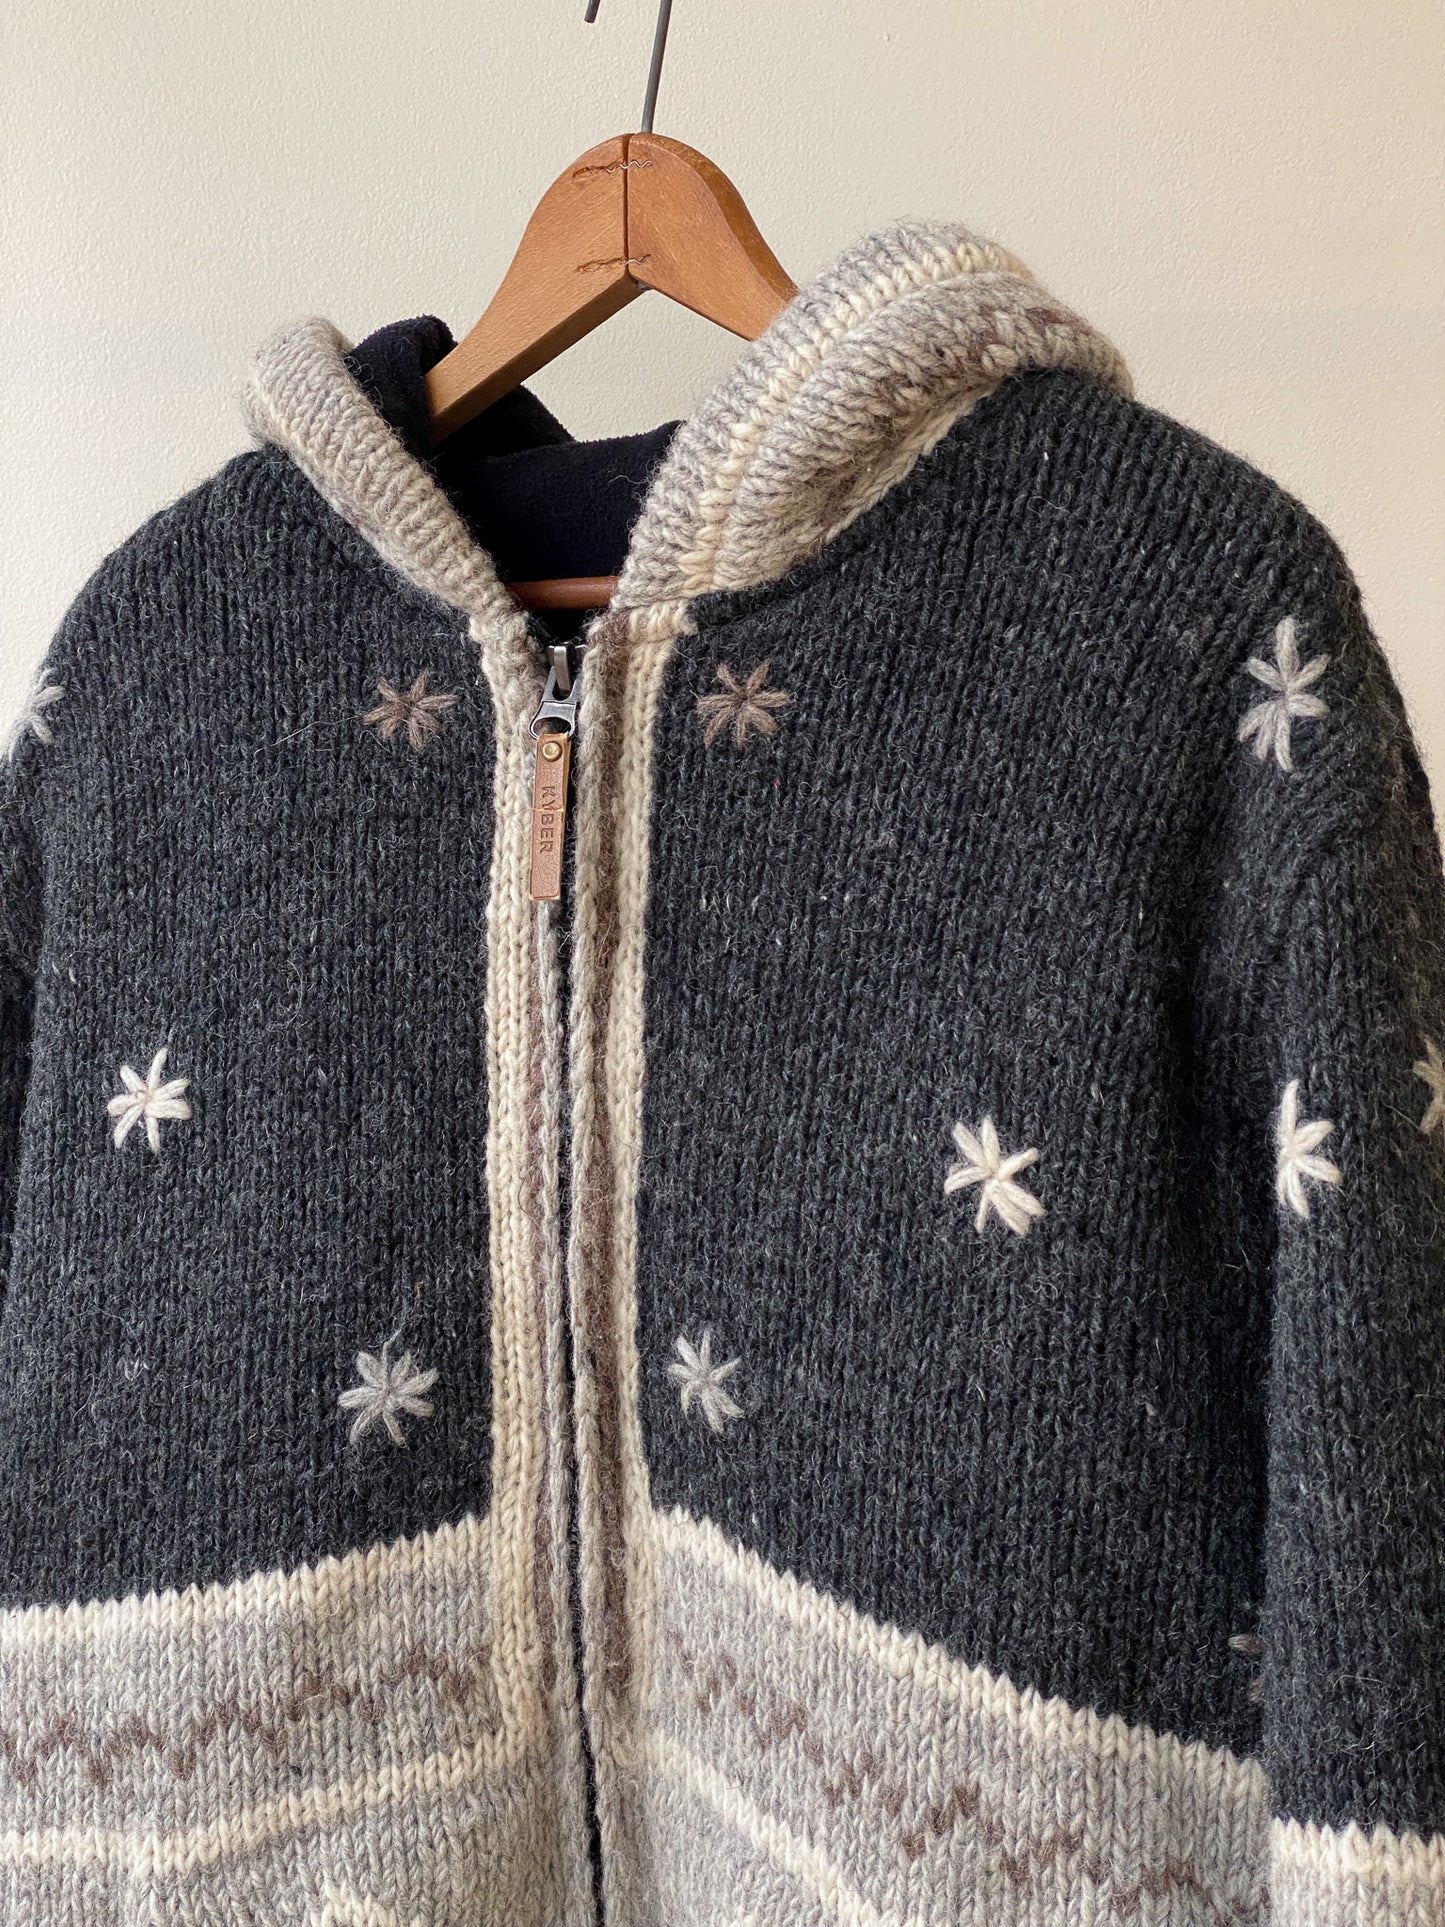 Hooded Fleece Lined Wool Sweater—[M]